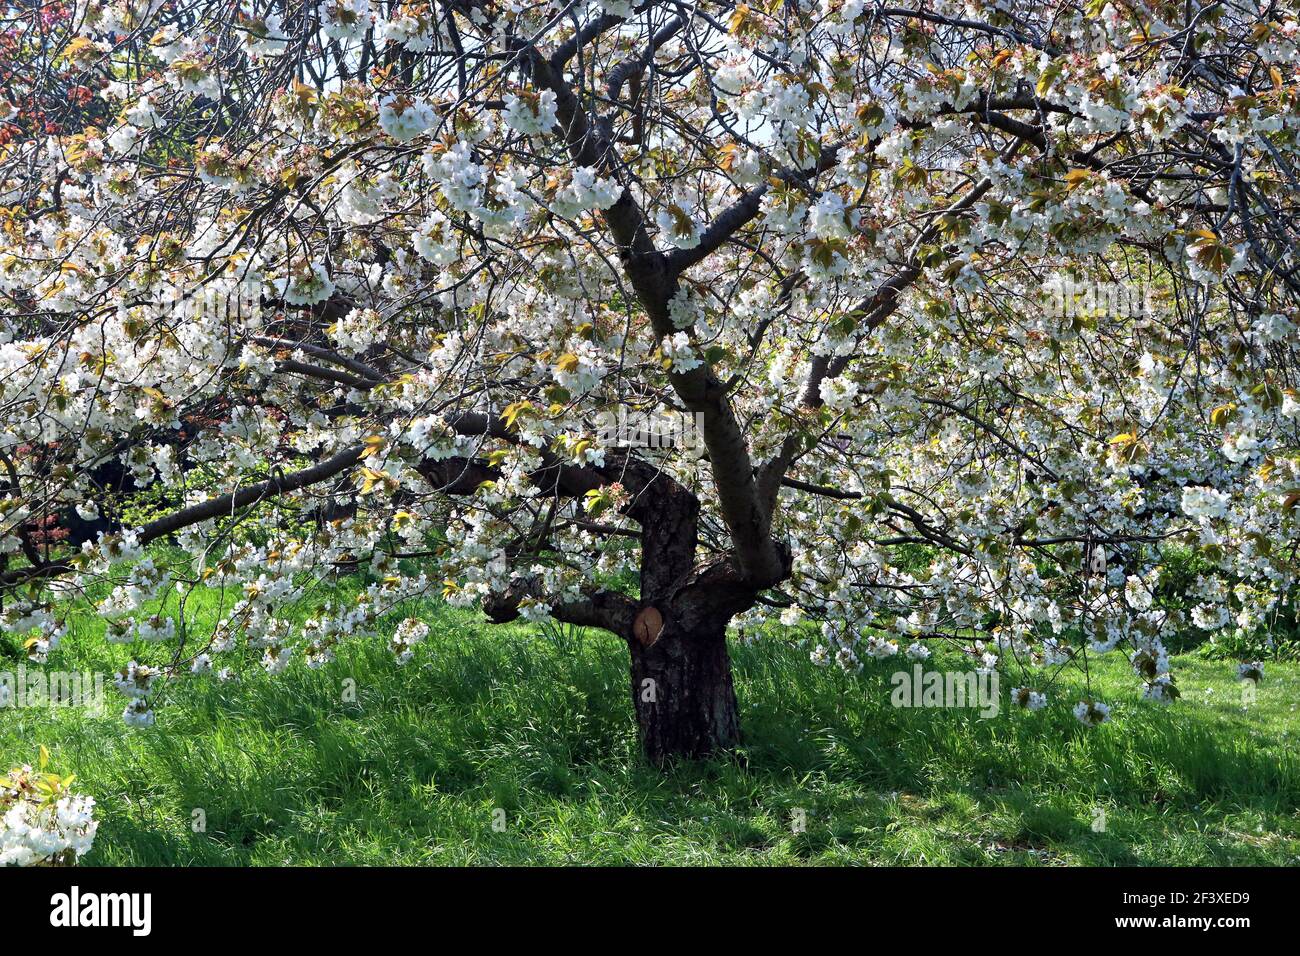 Immagine full frame di un albero in fiore di ciliegio bianco: prunus avium (ciliegio) Foto Stock